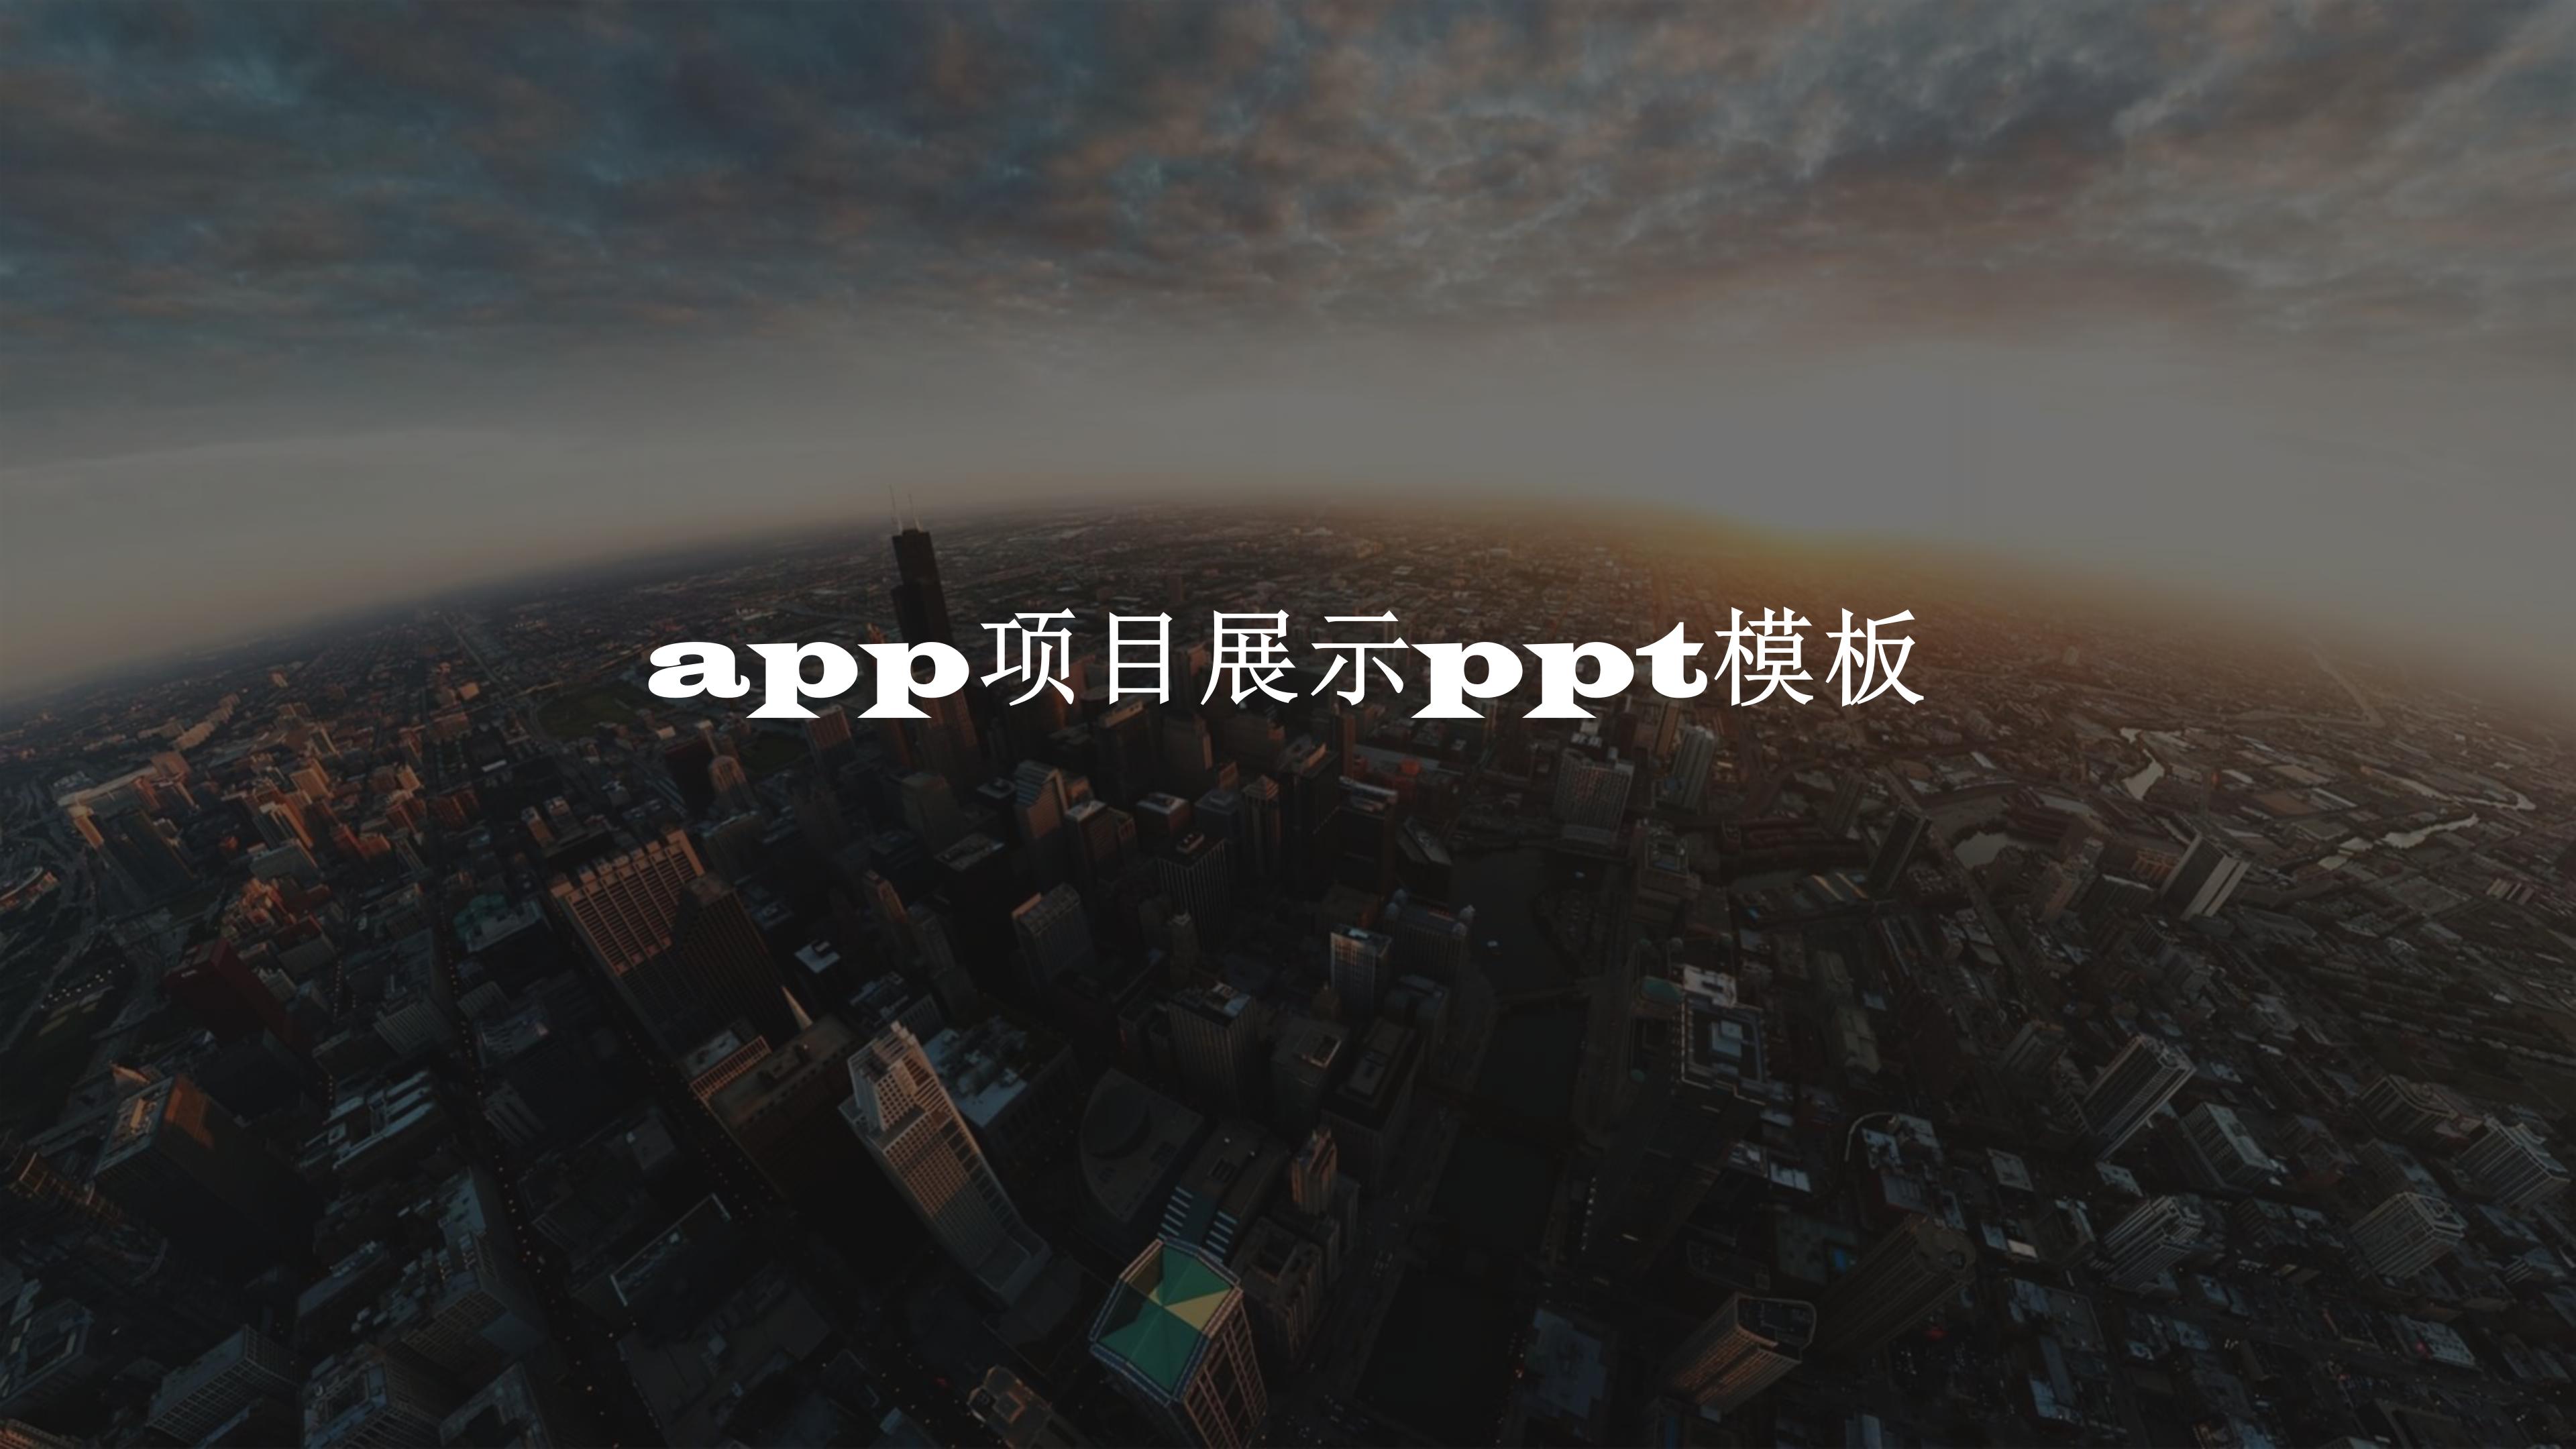 app项目展示ppt模板